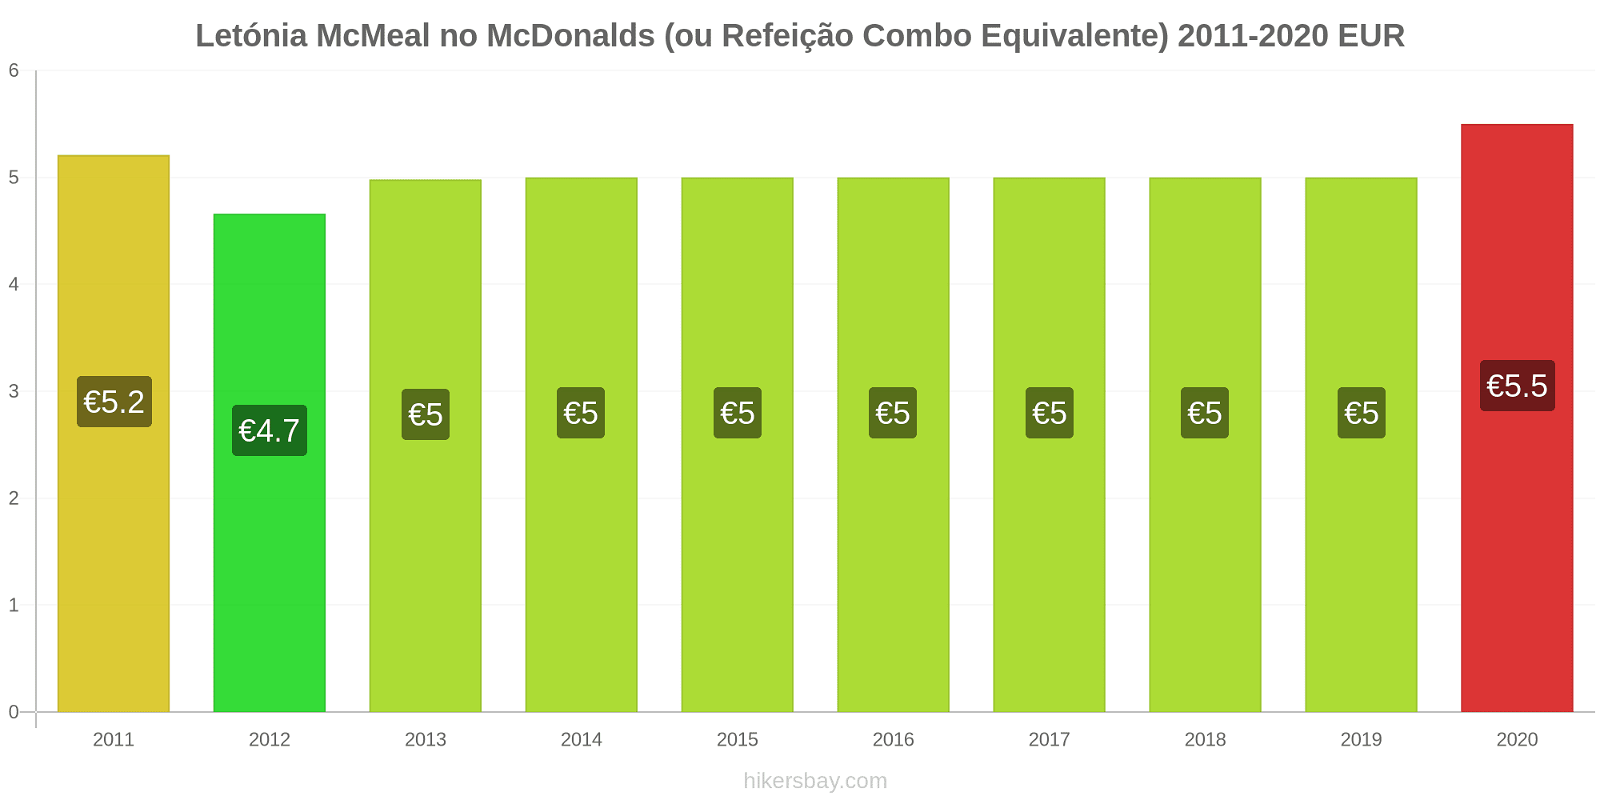 Letónia variação de preço McMeal no McDonald ' s (ou refeição Combo equivalente) hikersbay.com